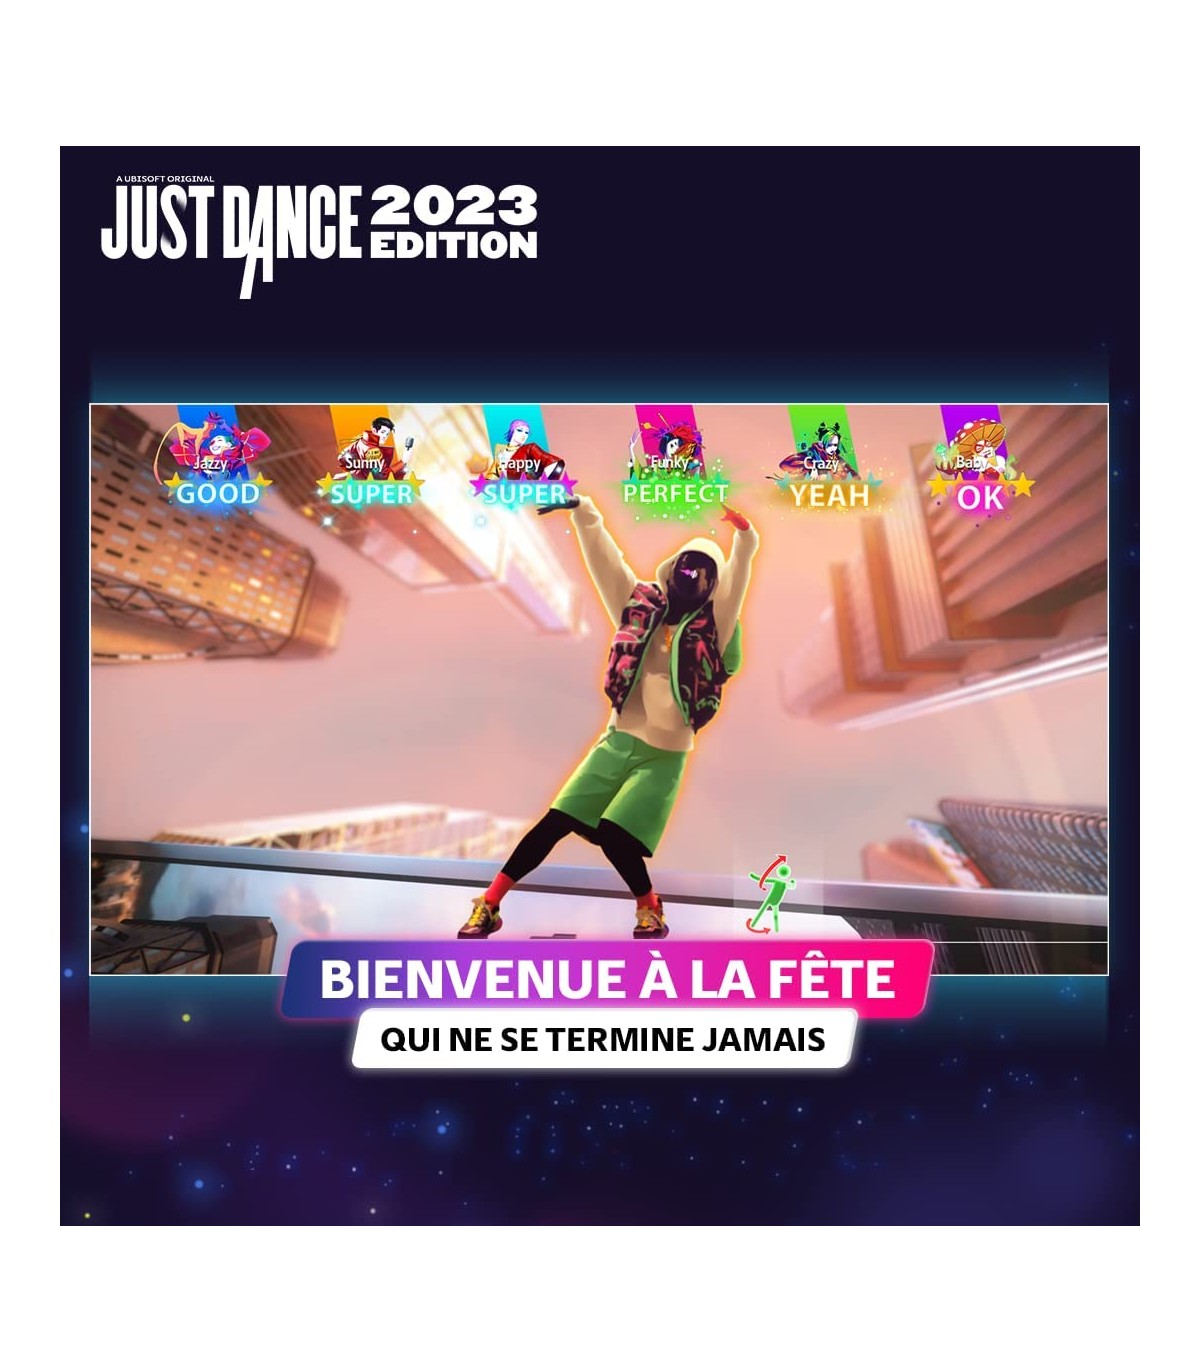 بازی Just Dance 2023 Edition برای پلی استیشن 5